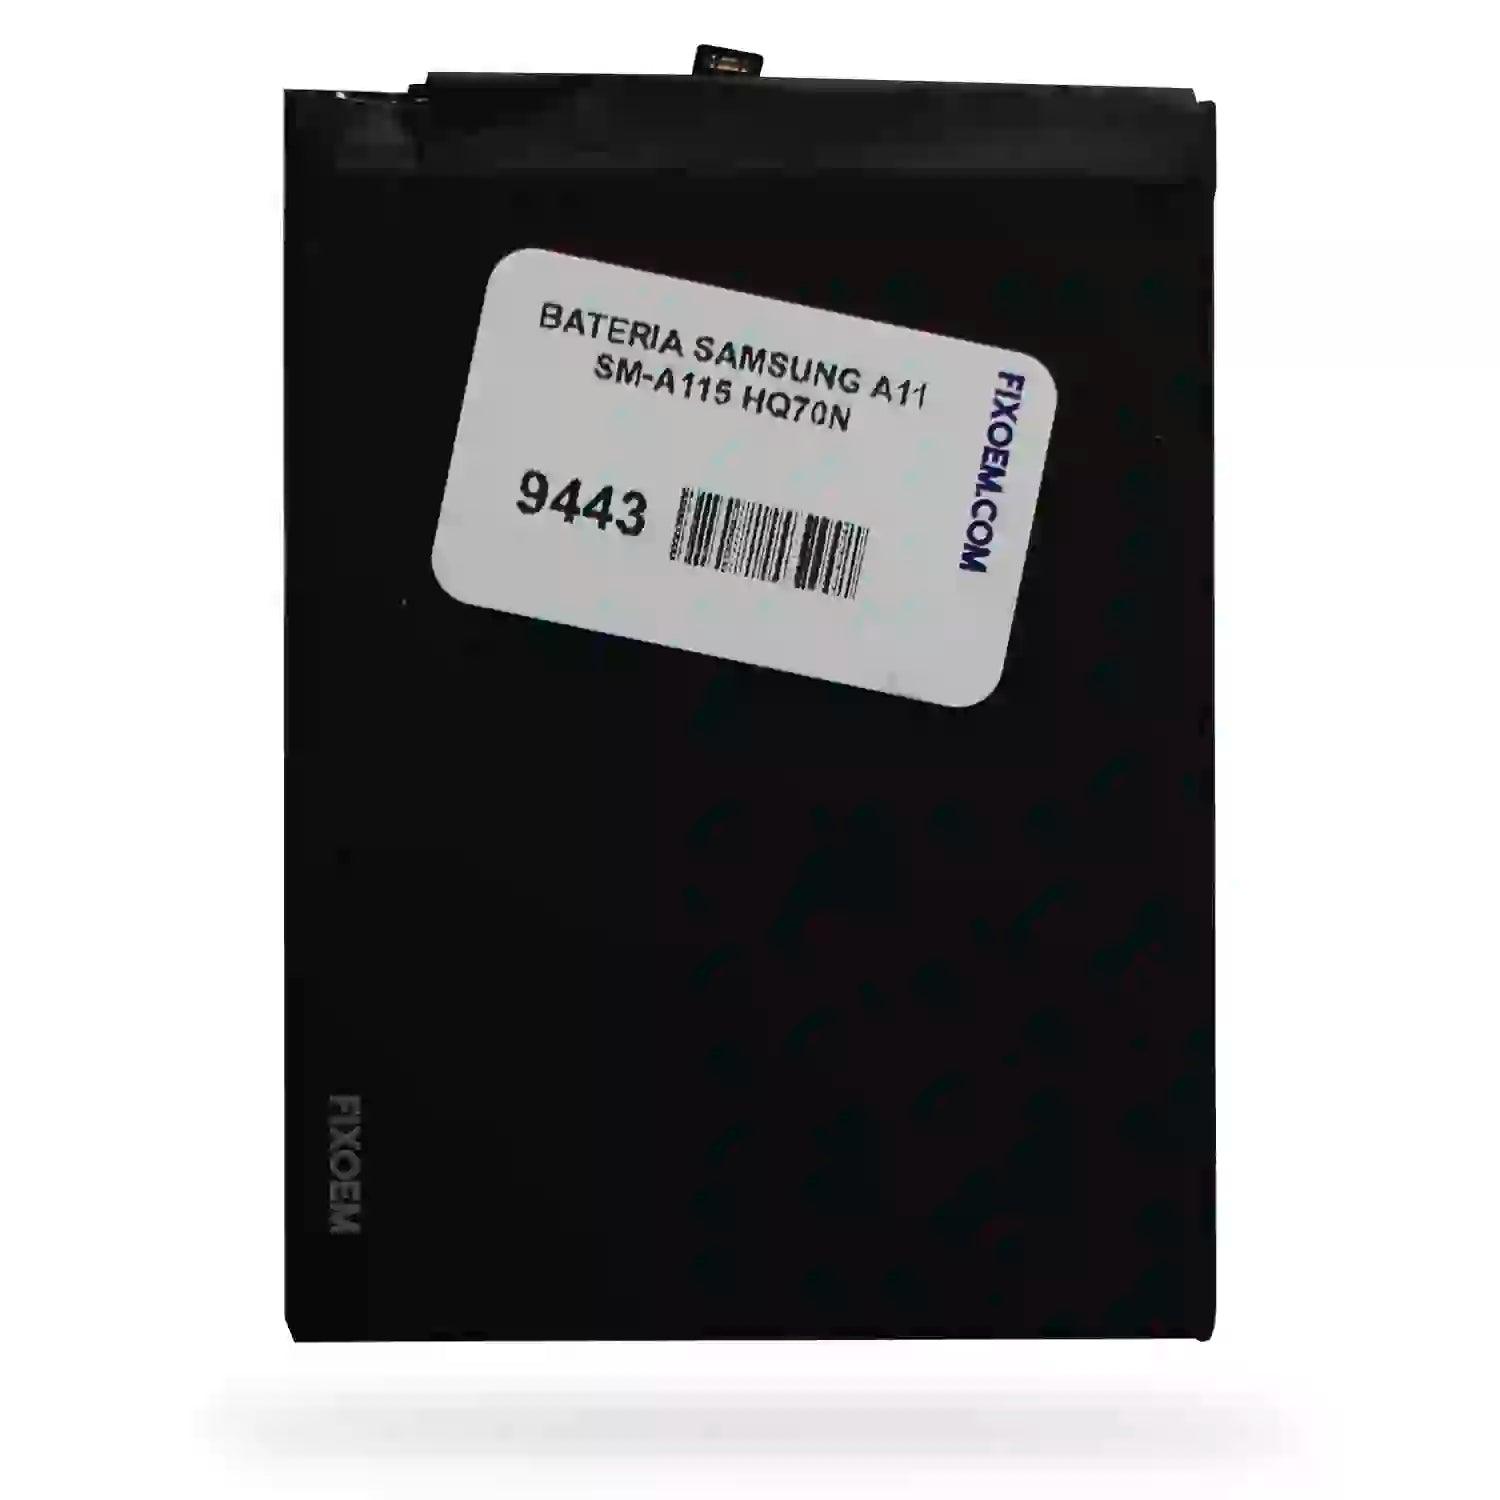 Bateria Samsung A11 Sm-A115 Hq70N a solo $ 120.00 Refaccion y puestos celulares, refurbish y microelectronica.- FixOEM